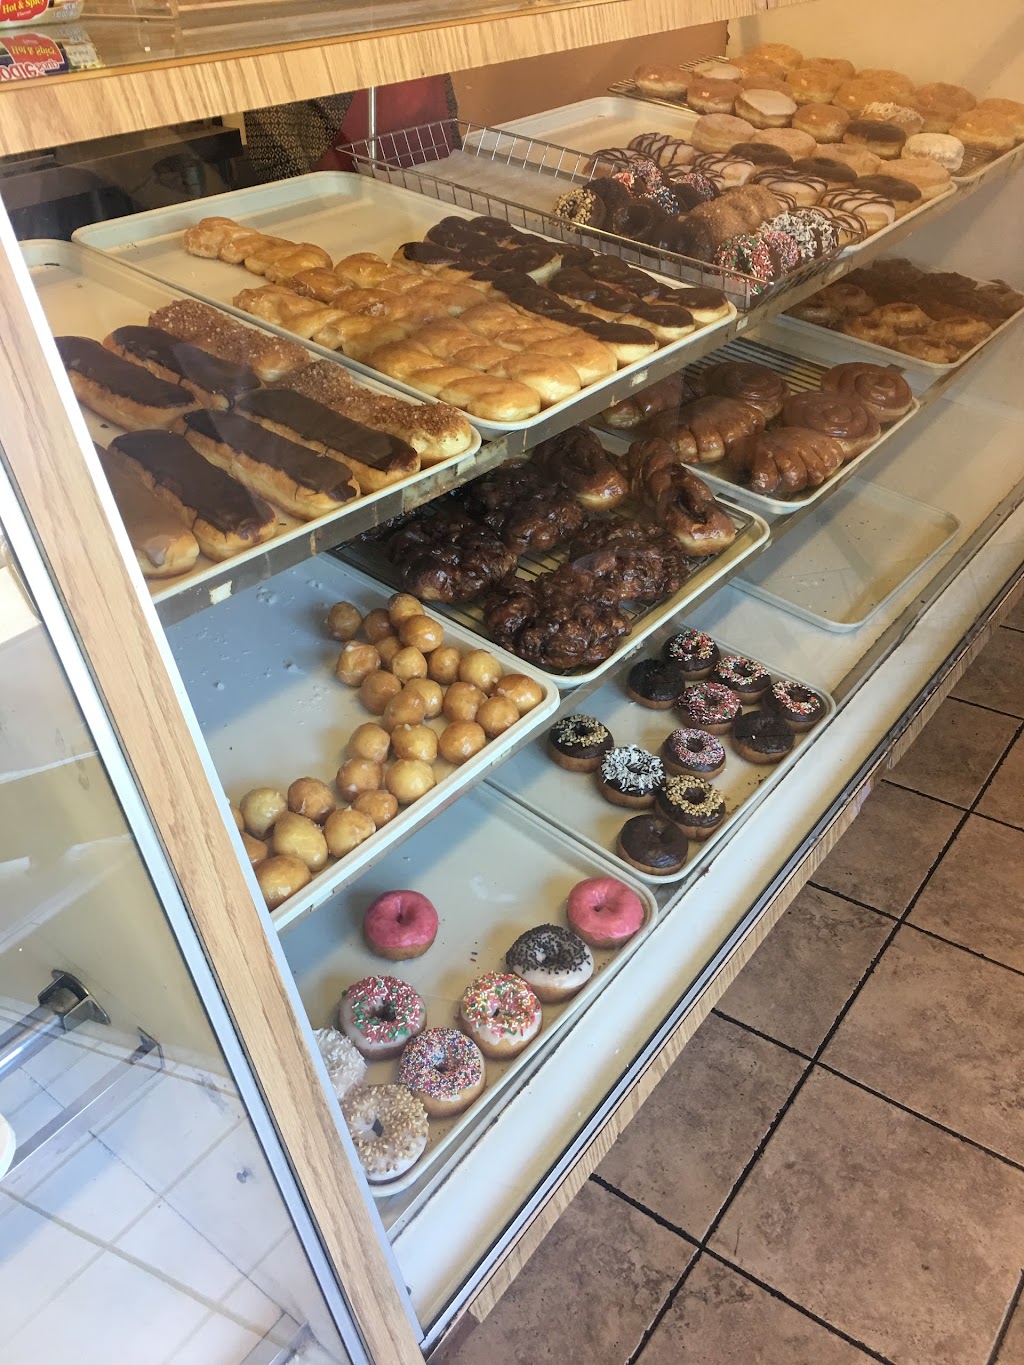 Sams Donuts | 2641 N Grand Ave, Santa Ana, CA 92705, USA | Phone: (714) 386-2240